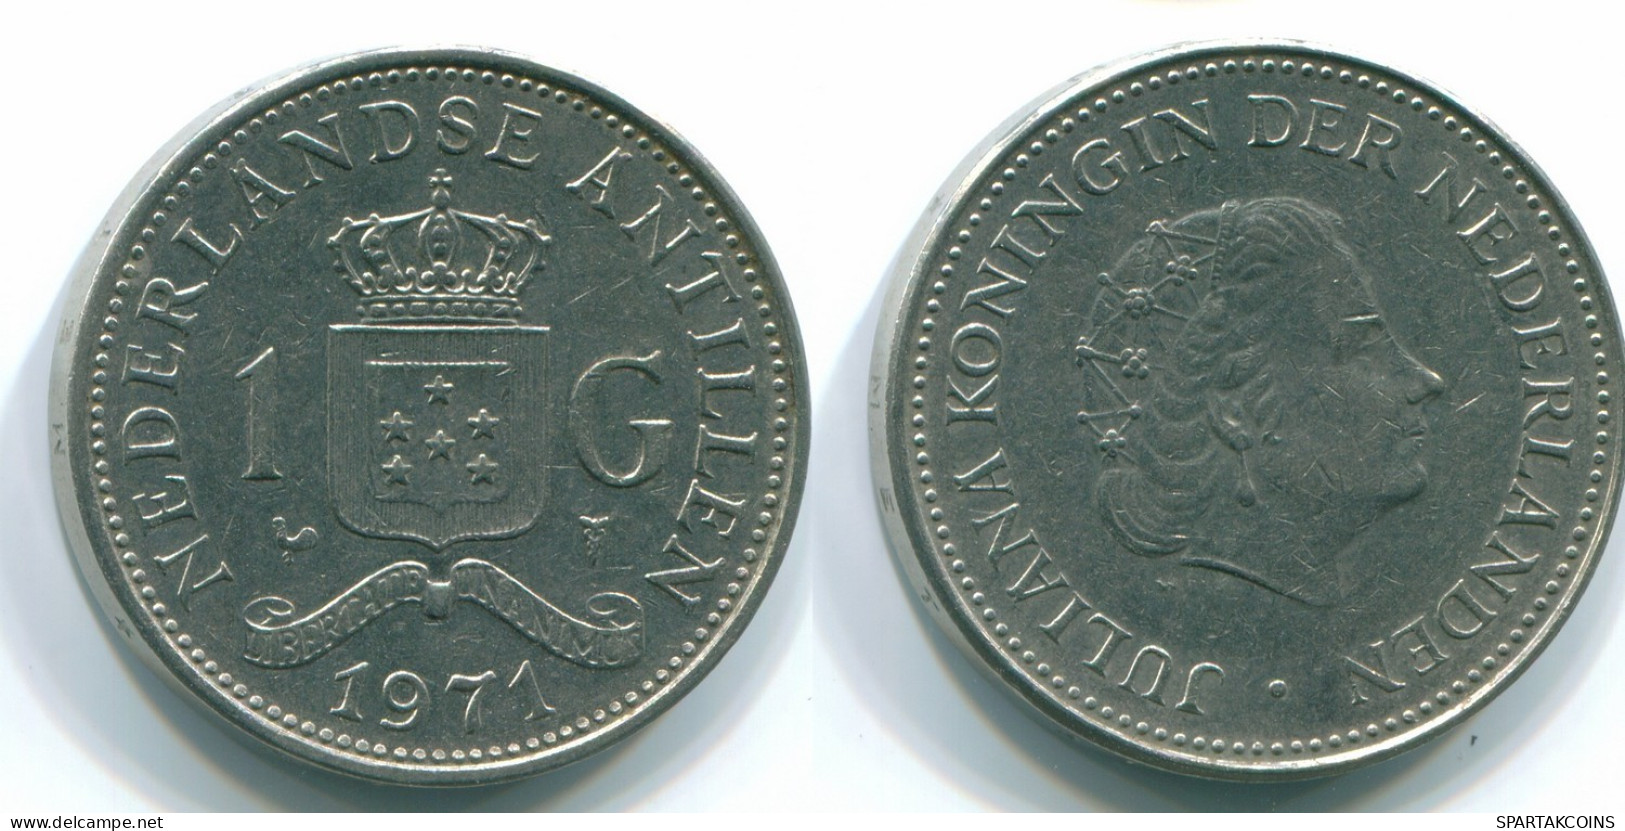 1 GULDEN 1971 ANTILLAS NEERLANDESAS Nickel Colonial Moneda #S11916.E.A - Netherlands Antilles